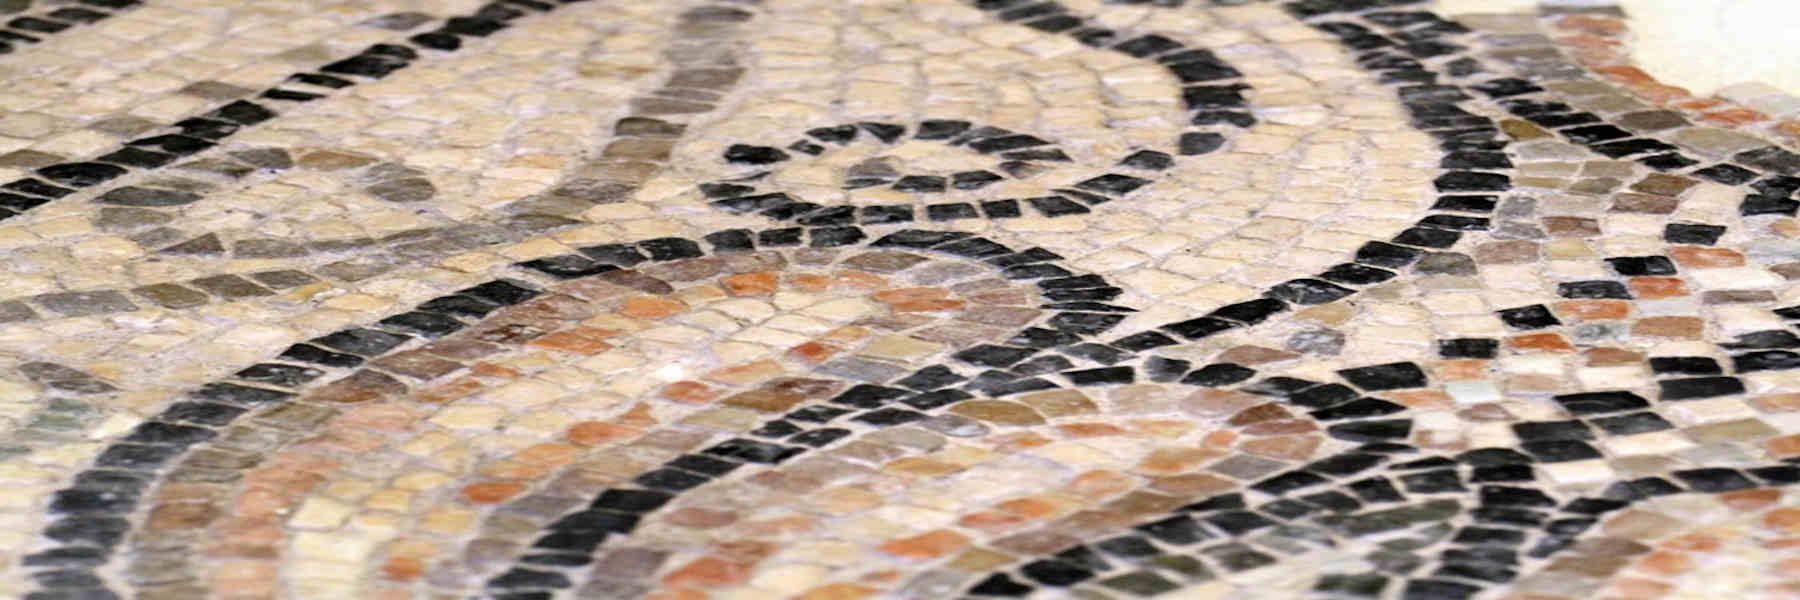 Archäologie in Musa: die Mosaiken von San Martino prope litus maris